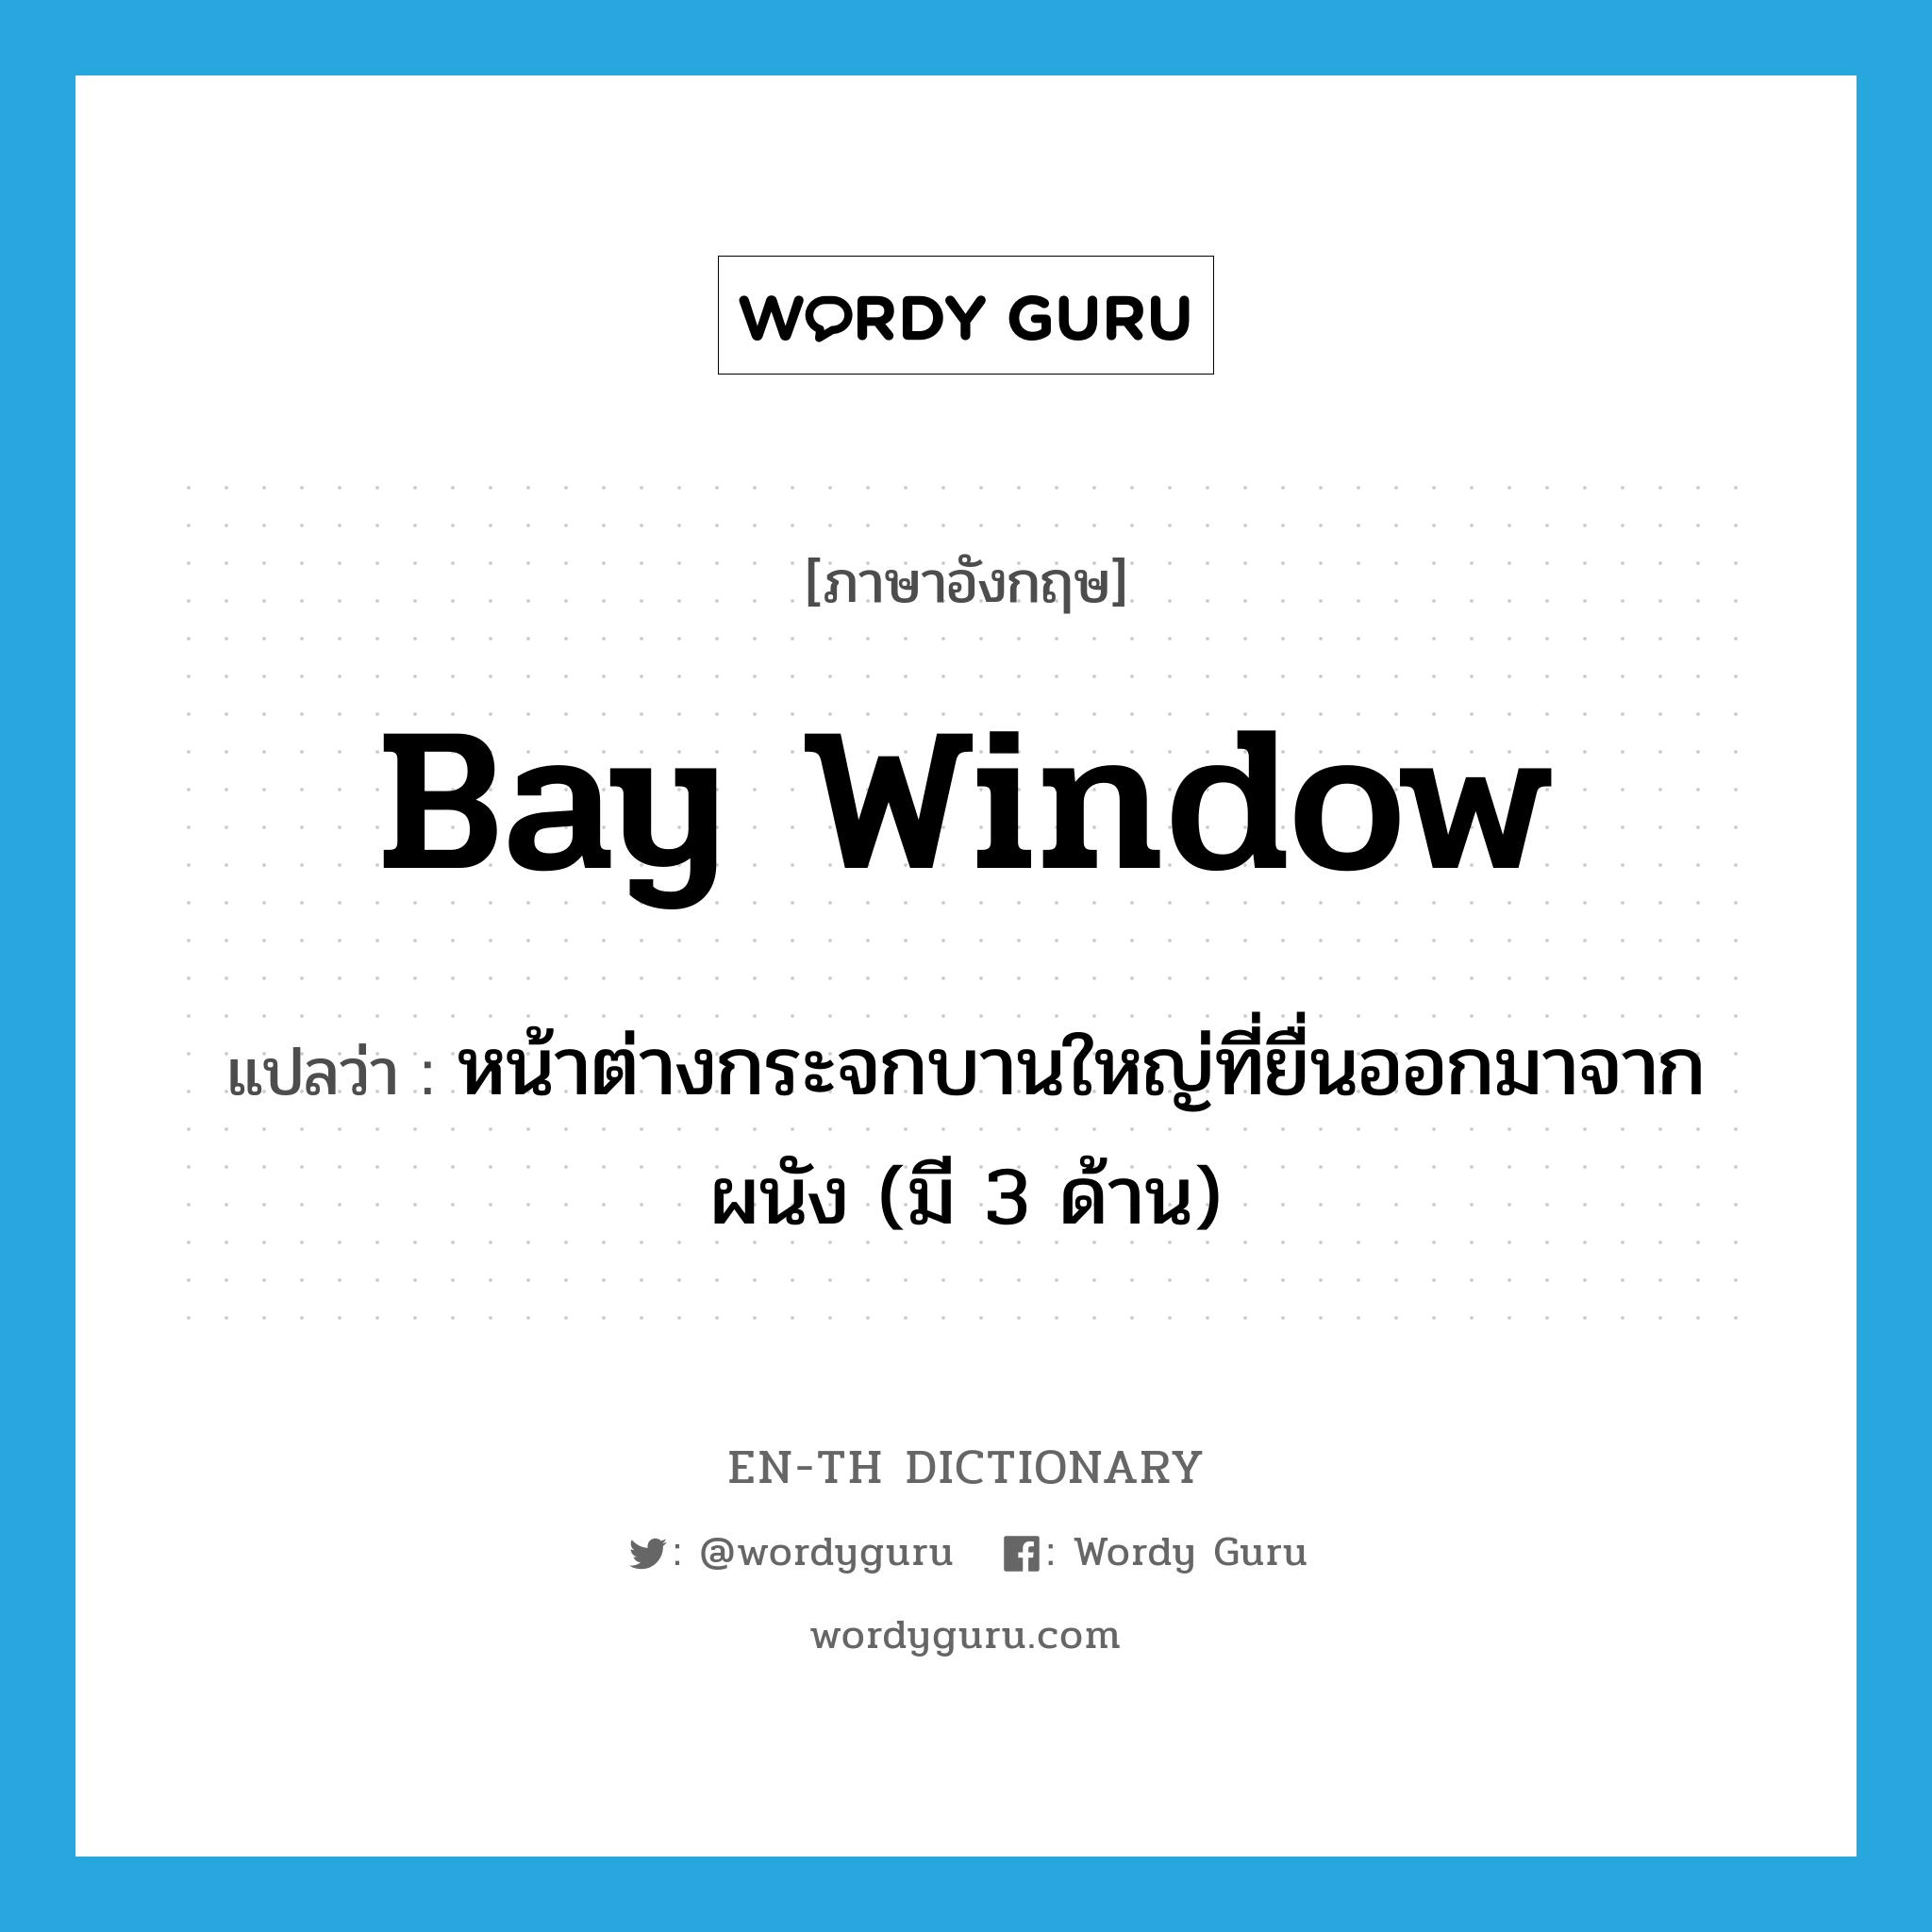 bay window แปลว่า?, คำศัพท์ภาษาอังกฤษ bay window แปลว่า หน้าต่างกระจกบานใหญ่ที่ยื่นออกมาจากผนัง (มี 3 ด้าน) ประเภท N หมวด N